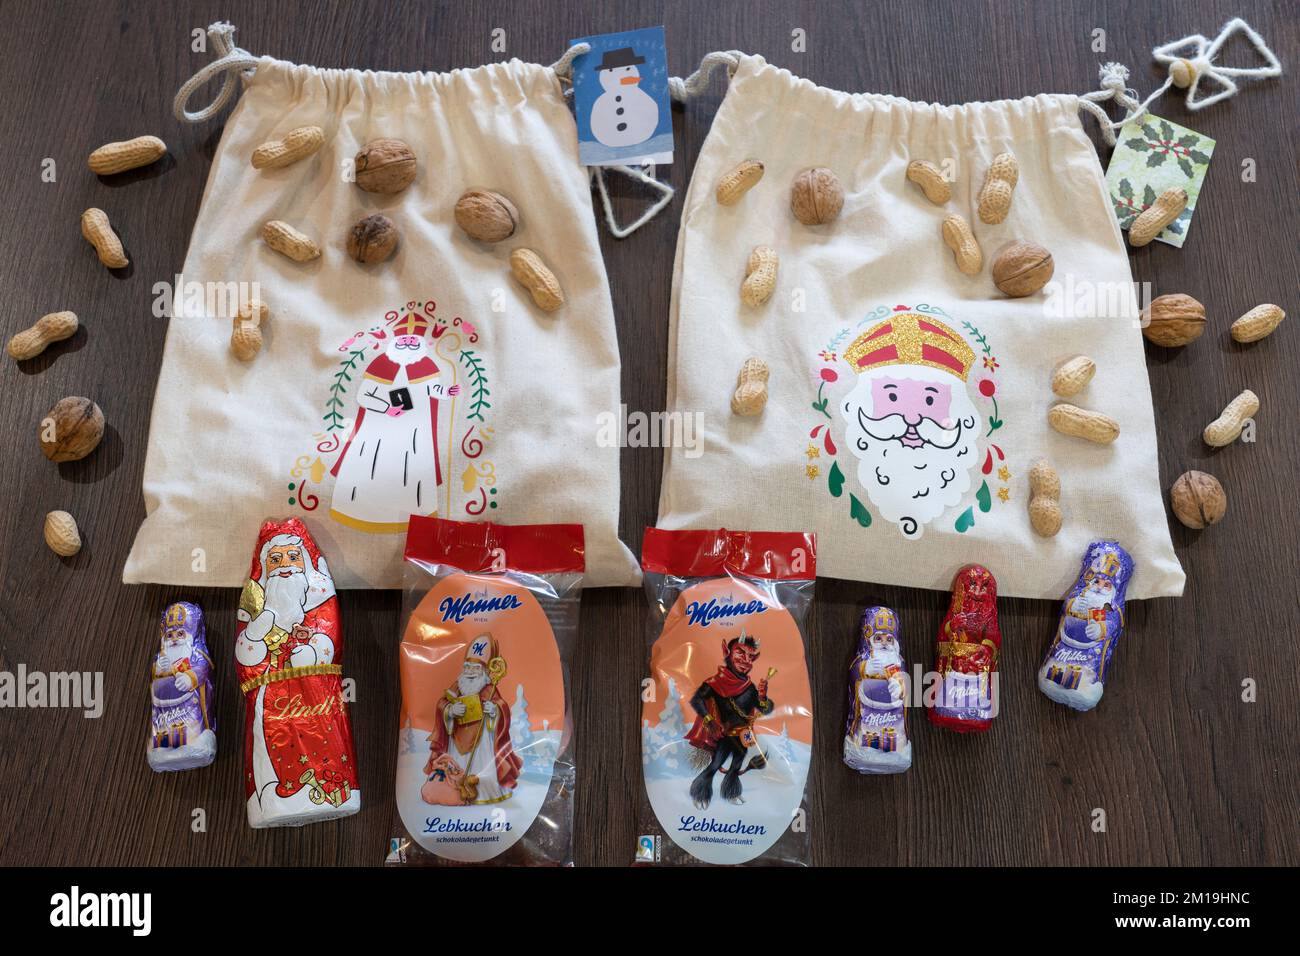 Saint Nicholas Eve 5th décembre à St. Nick's Day 6th décembre tradition de remplissage de chaussures avec de petits cadeaux, satsumas, chocolats et noix Banque D'Images